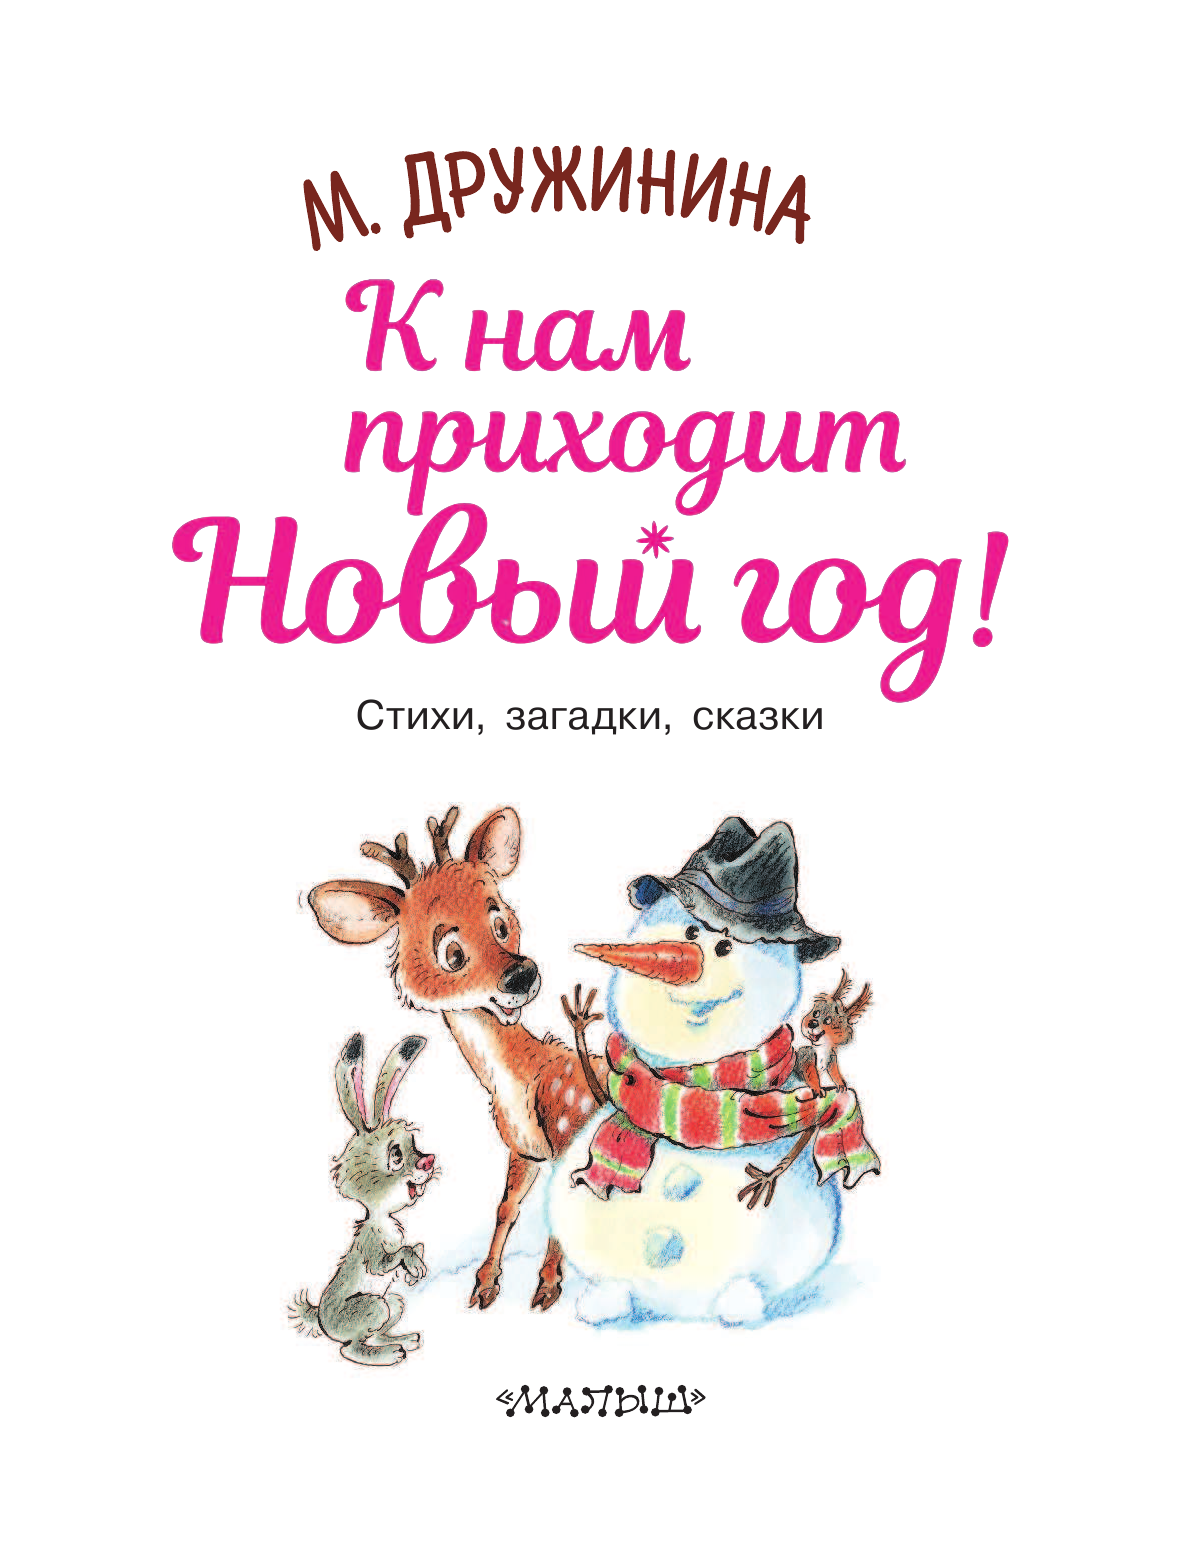 Дружинина Марина Владимировна К нам приходит Новый год! - страница 4